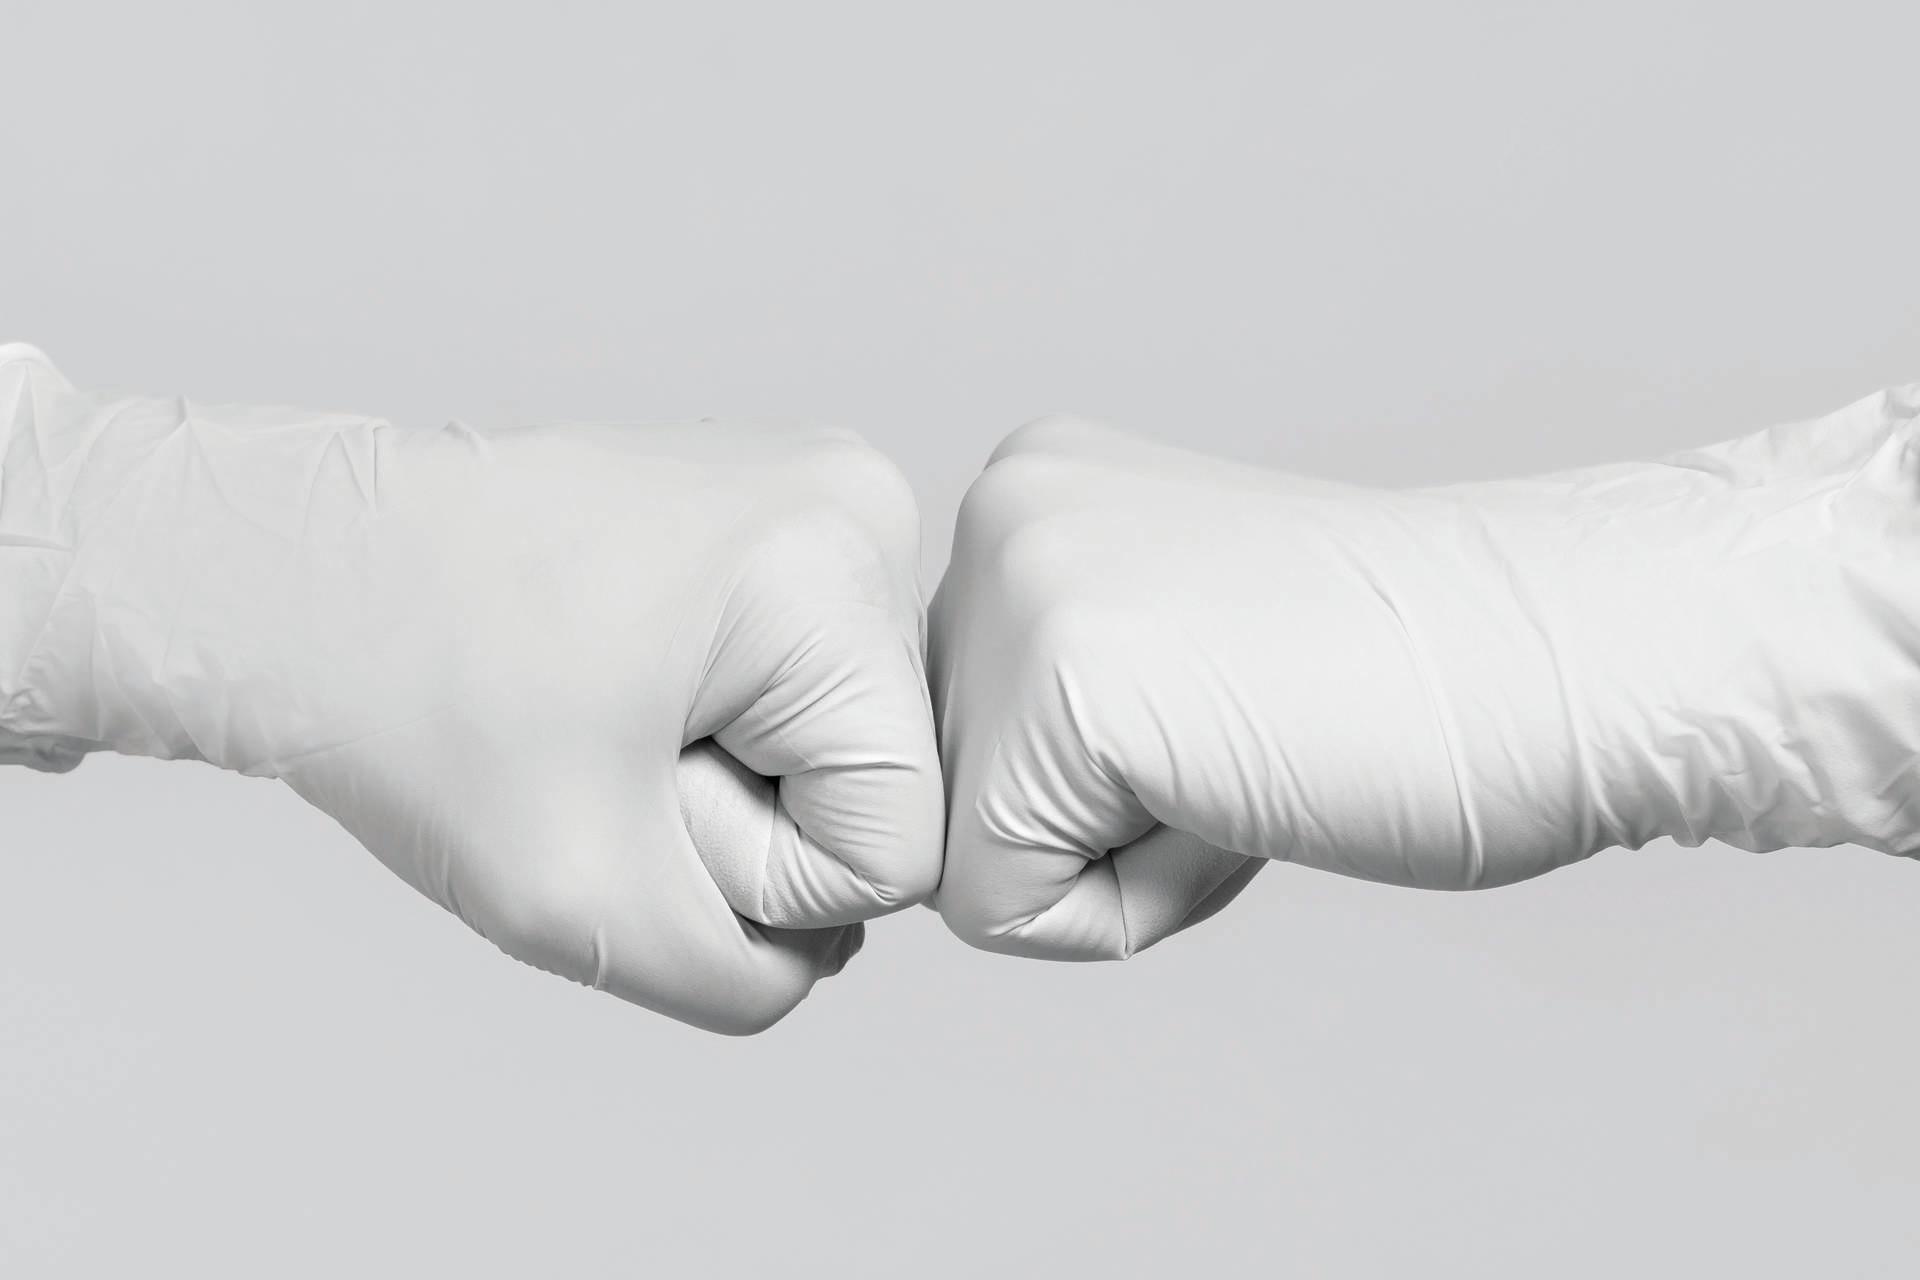 Weiße Handschuhe zum Modell. Kampf gegen das Coronavirus. Zwei medizinische Arbeiter machen eine Fauststoßgeste.